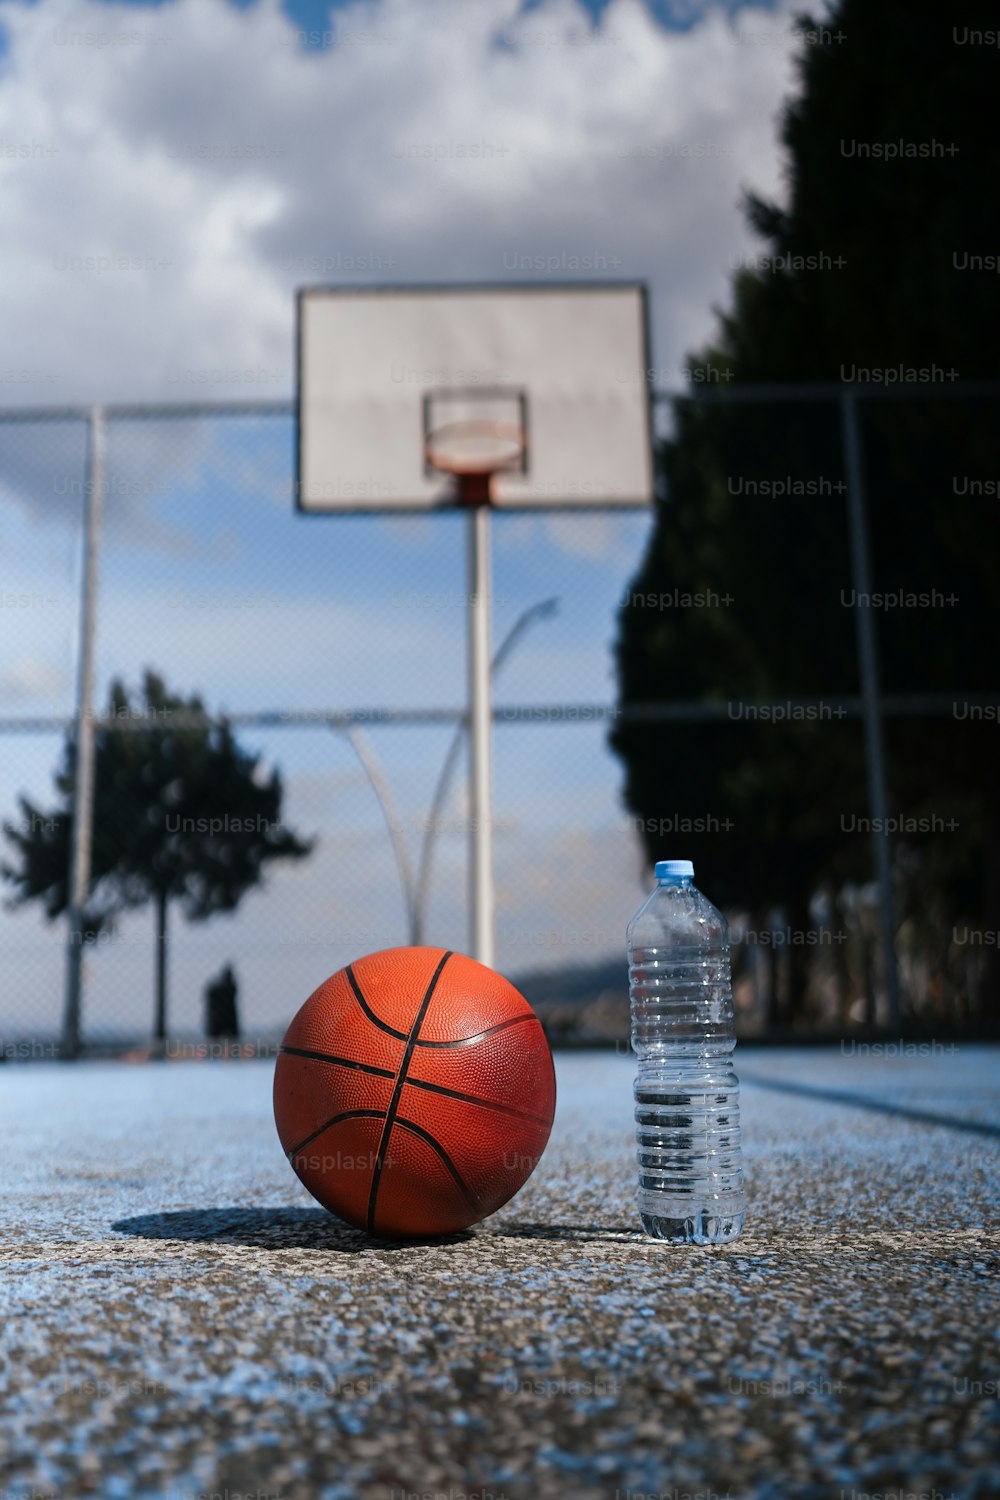 농구 코트에 앉아있는 농구공과 물병